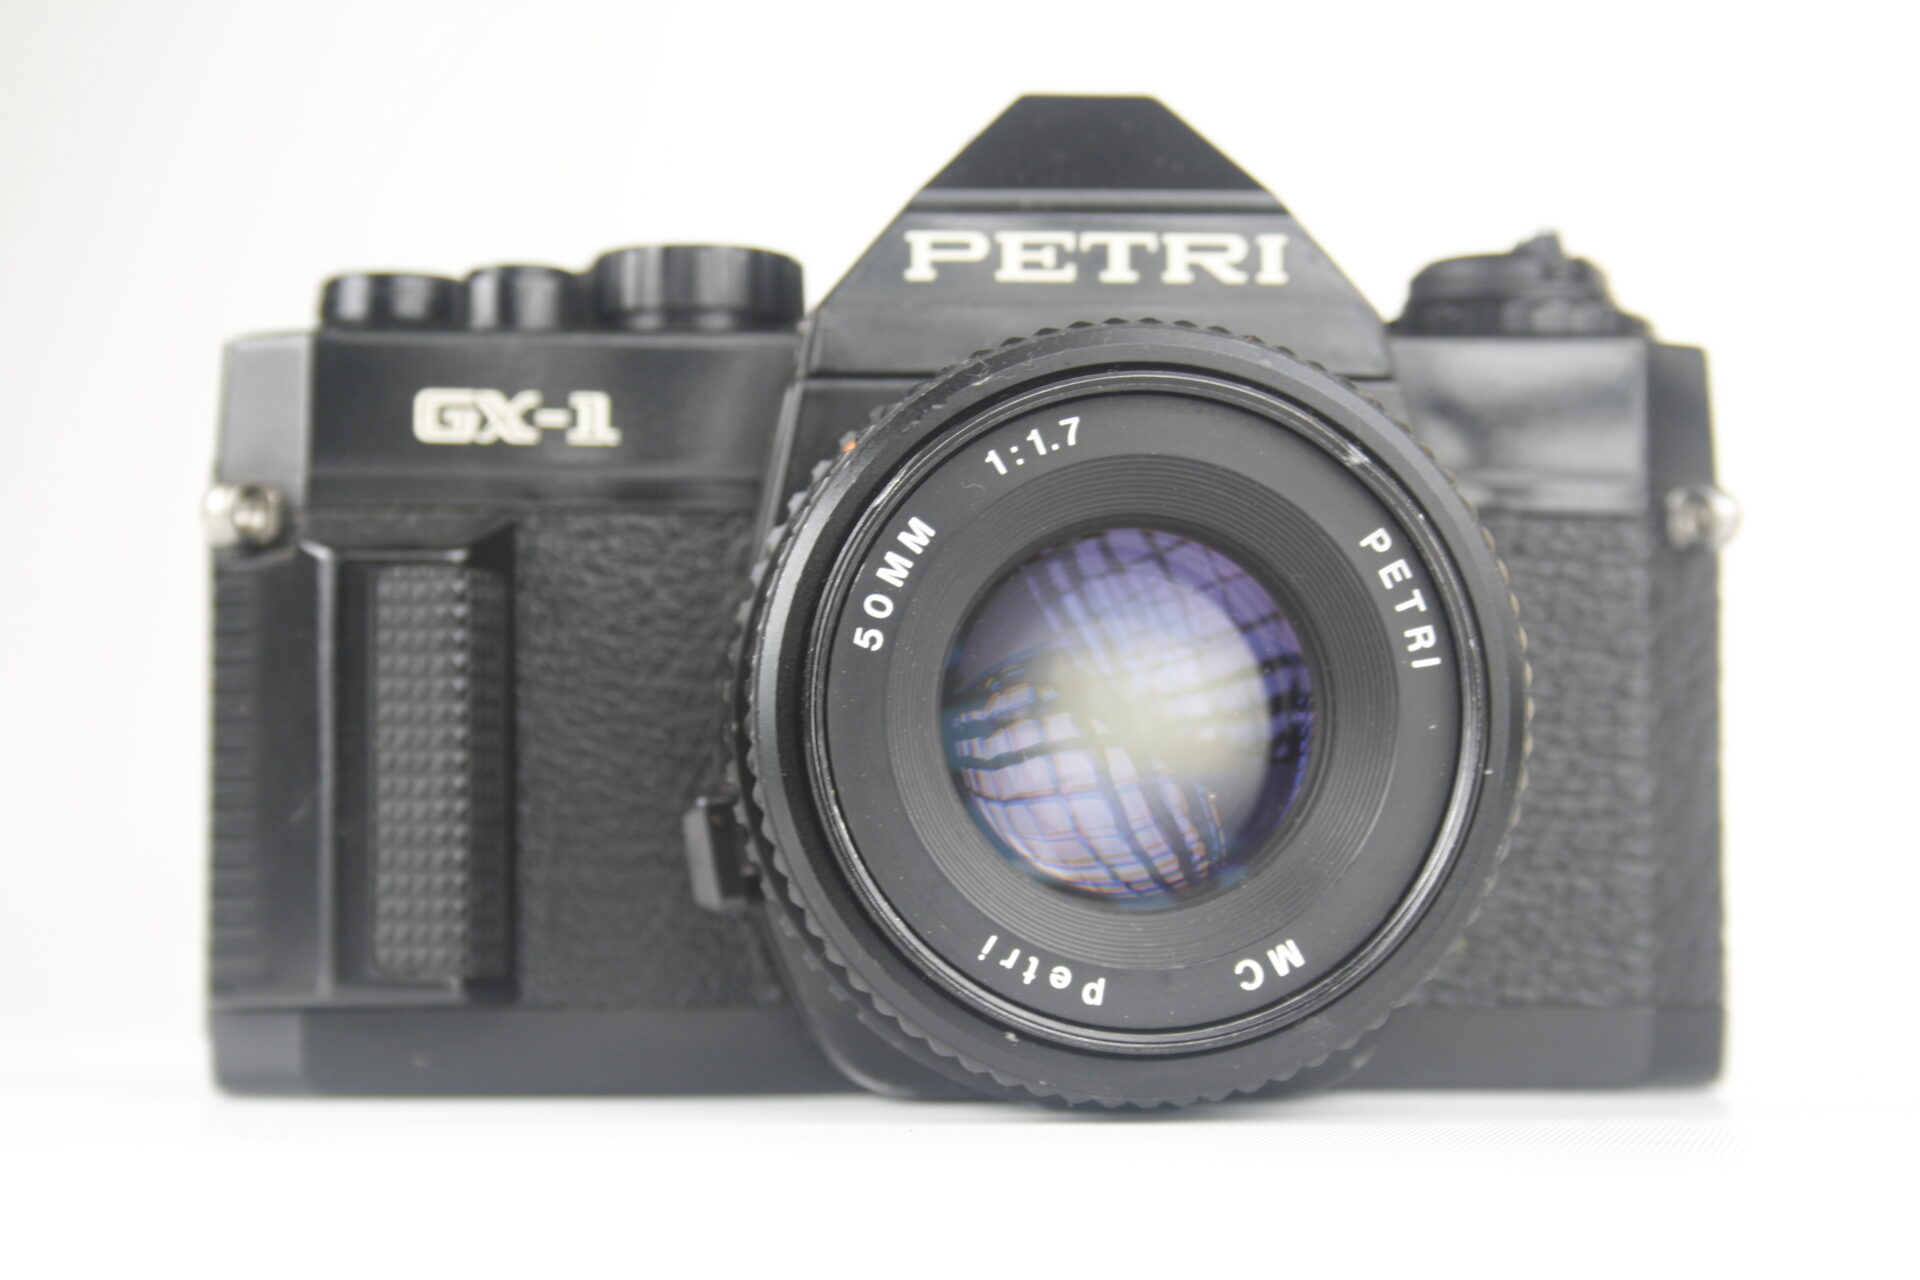 Petri GX-1. (Cosina CT-1A/Cosina CT-1G) 35mm SLR camera. Ca. 1980. Japan.